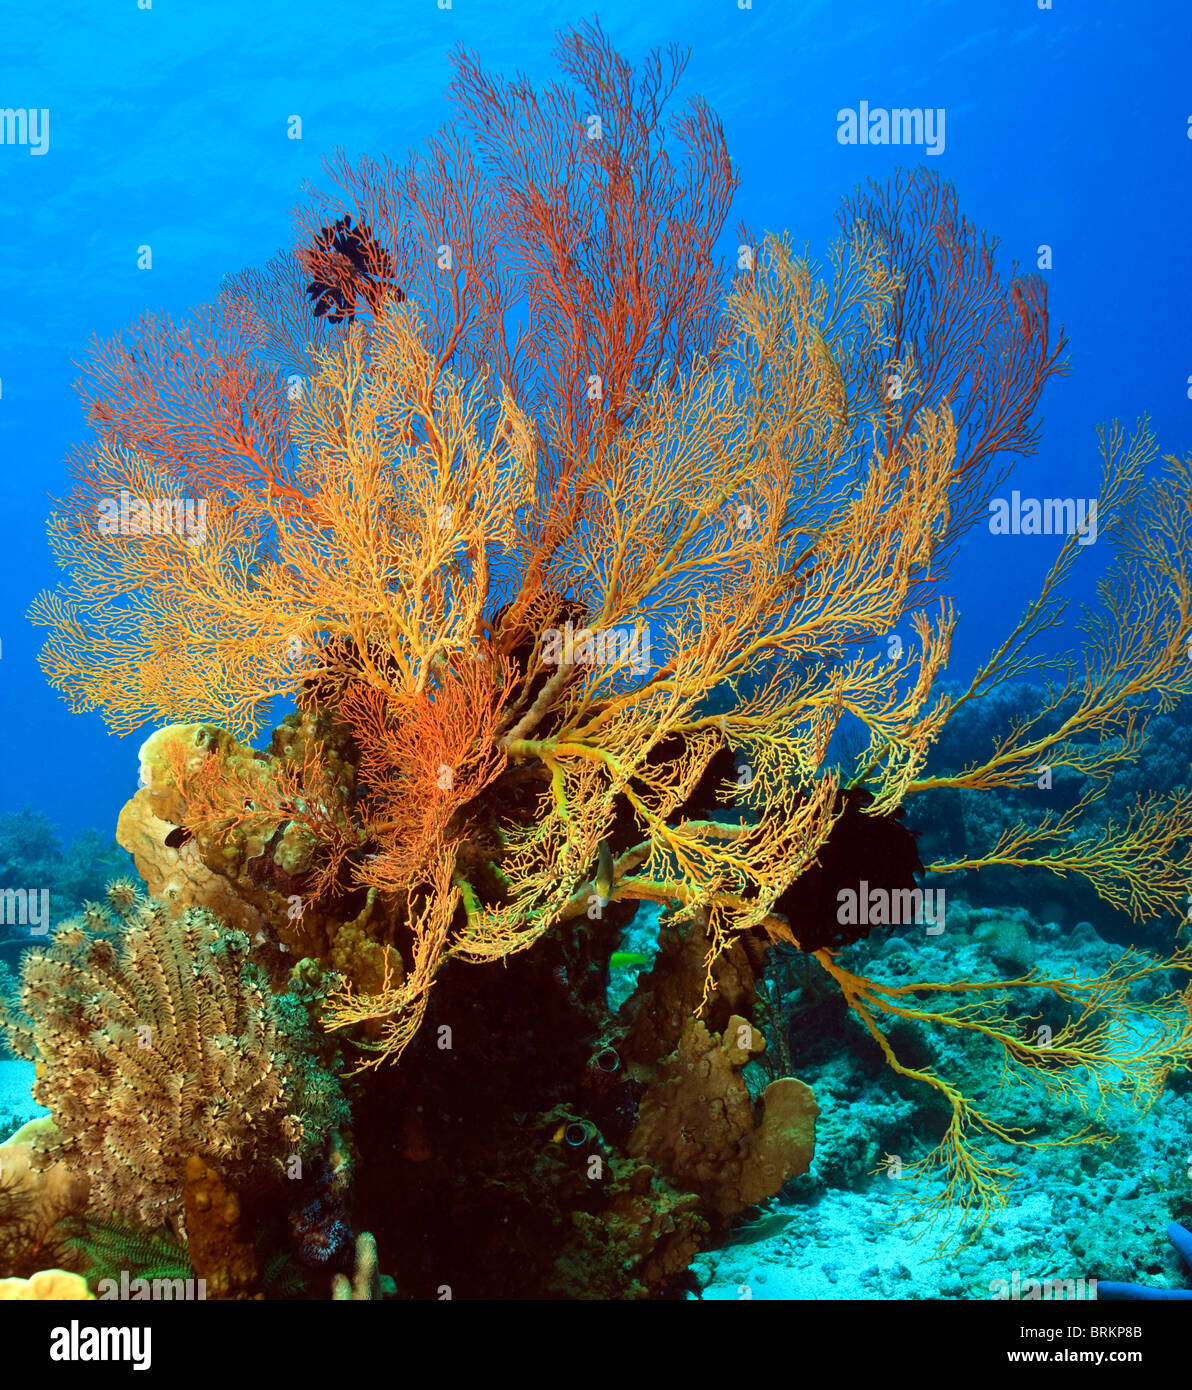 Large gorgonian sea fan in Bali Indonesia Stock Photo